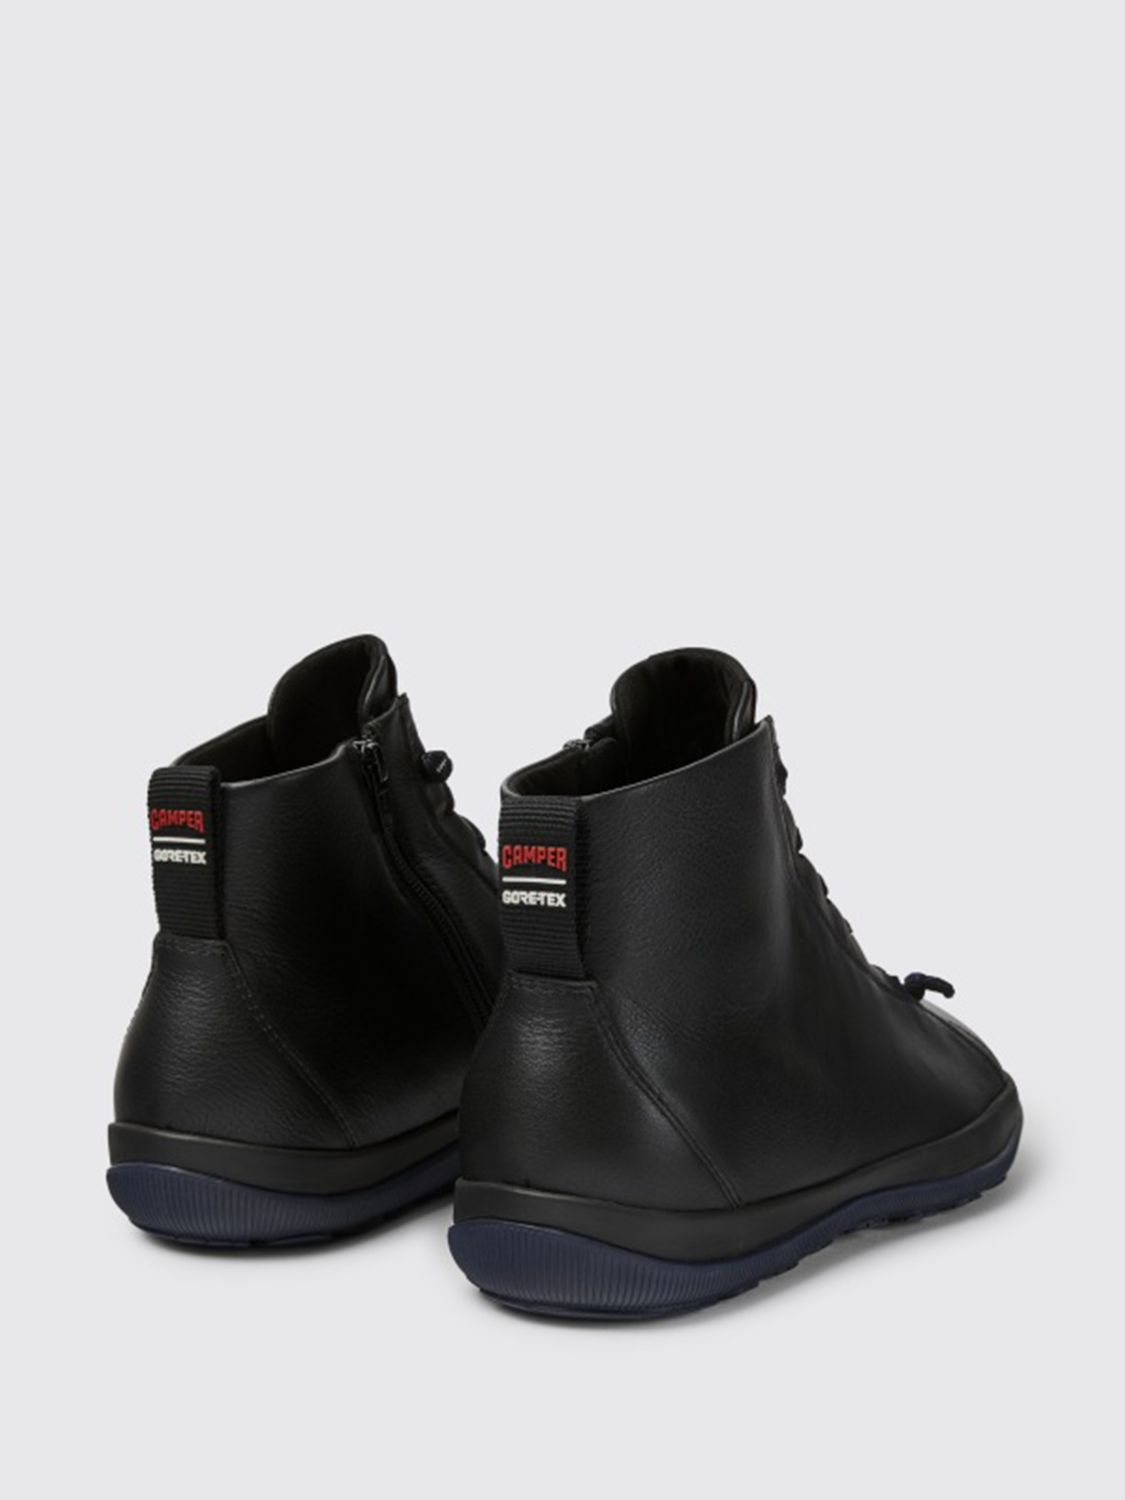 CAMPER: Peu Pista leather ankle boot - Black | Camper K300287-001 PEU online on GIGLIO.COM